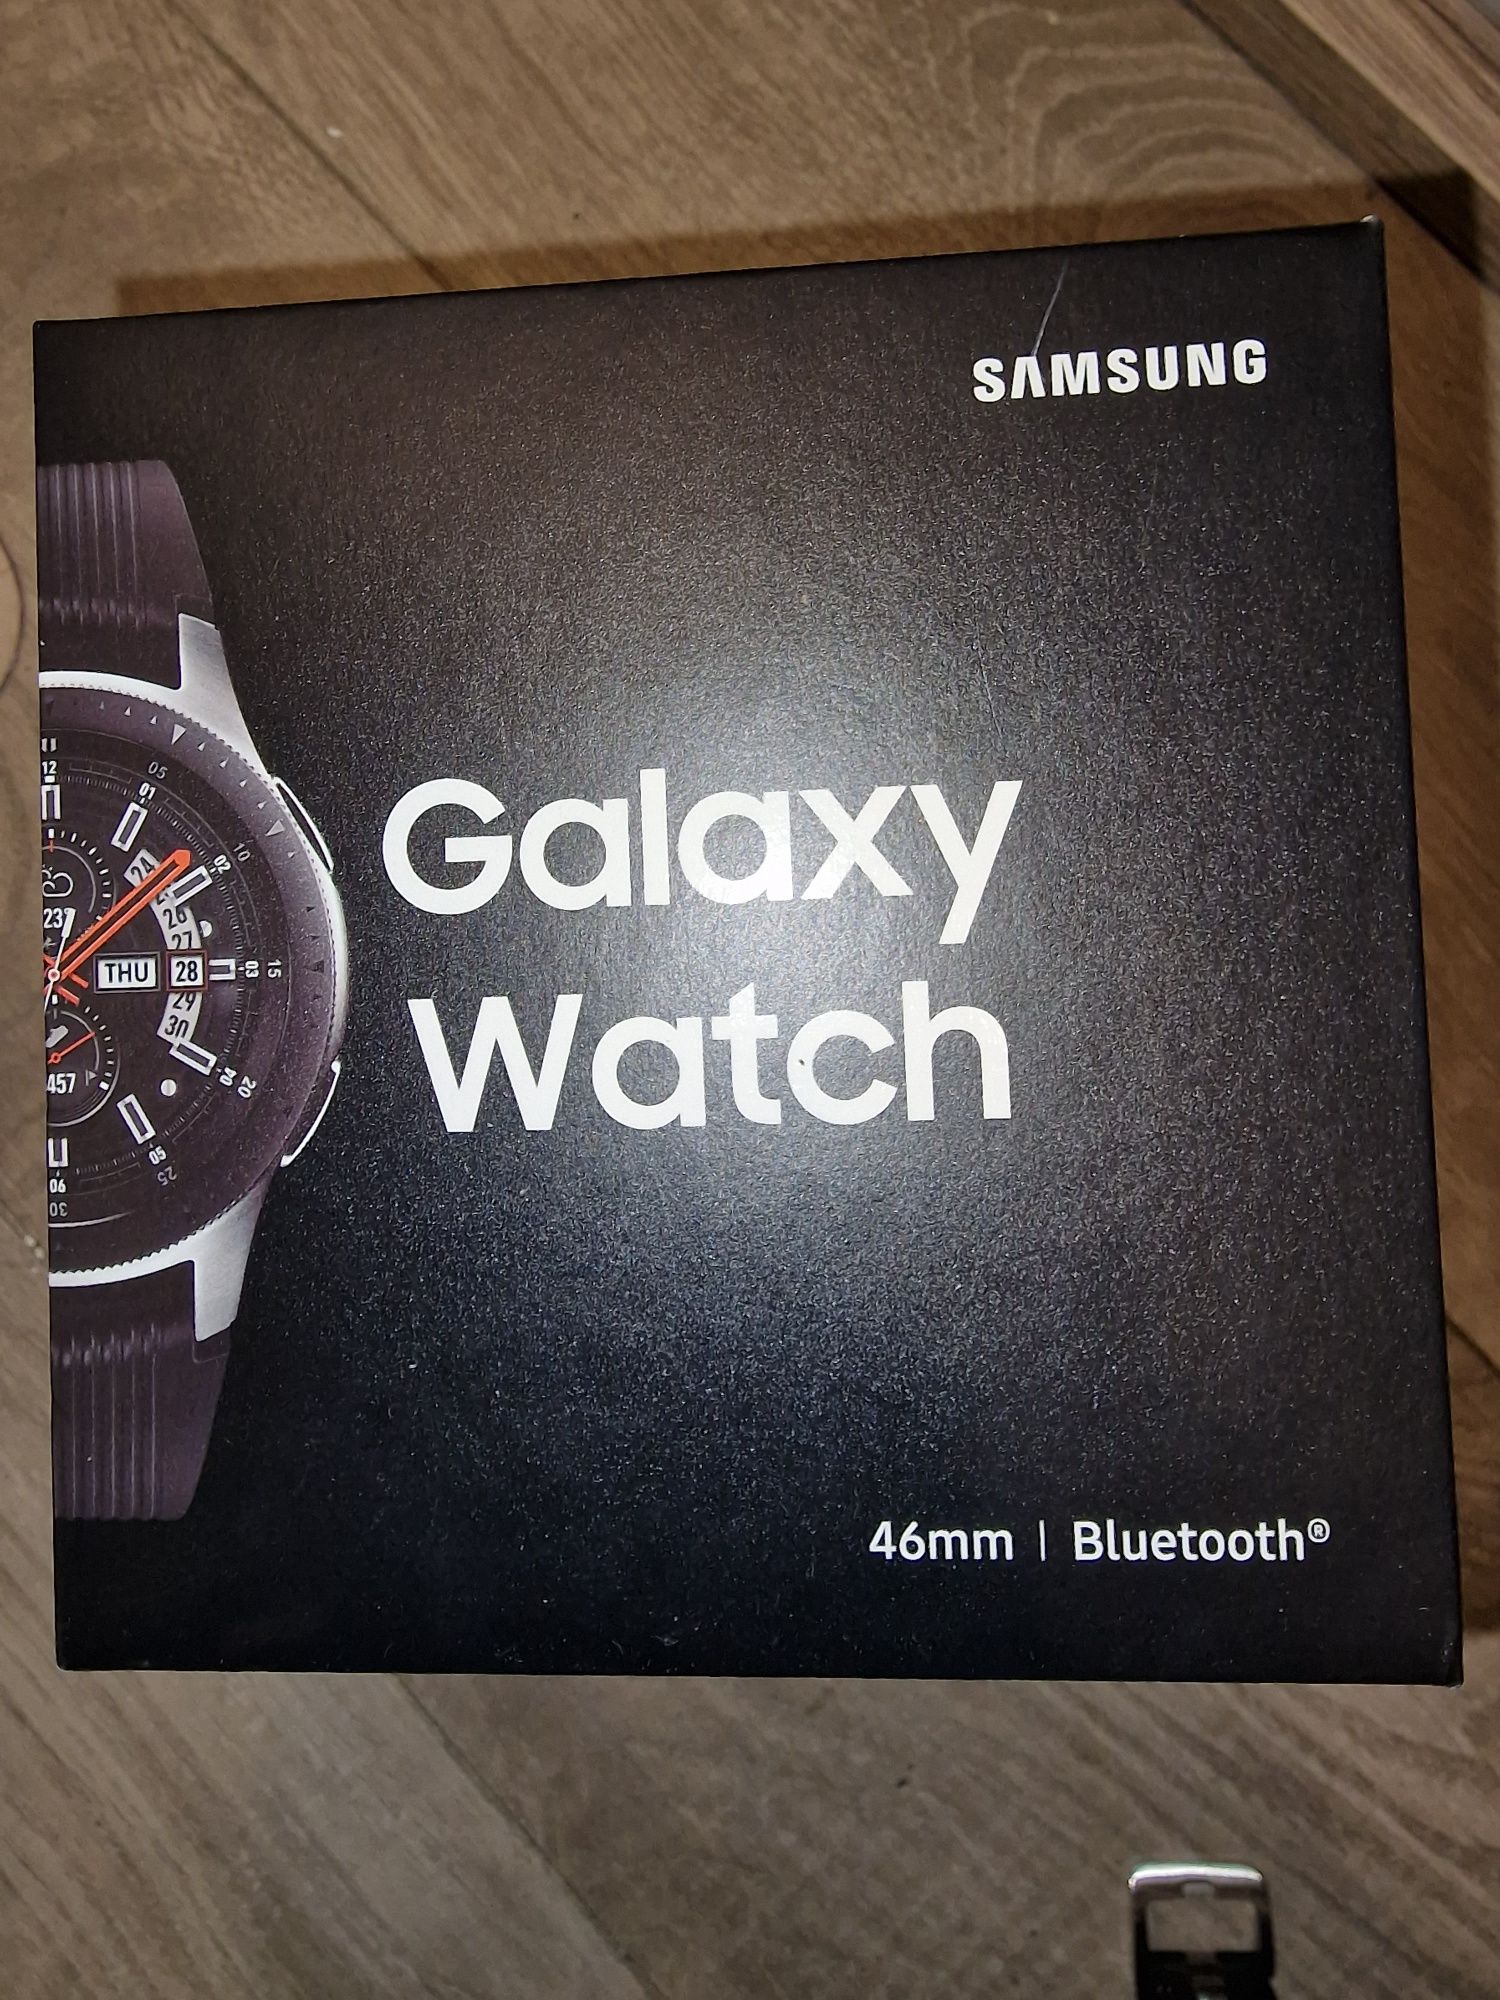 Galaxy watch 46 mm